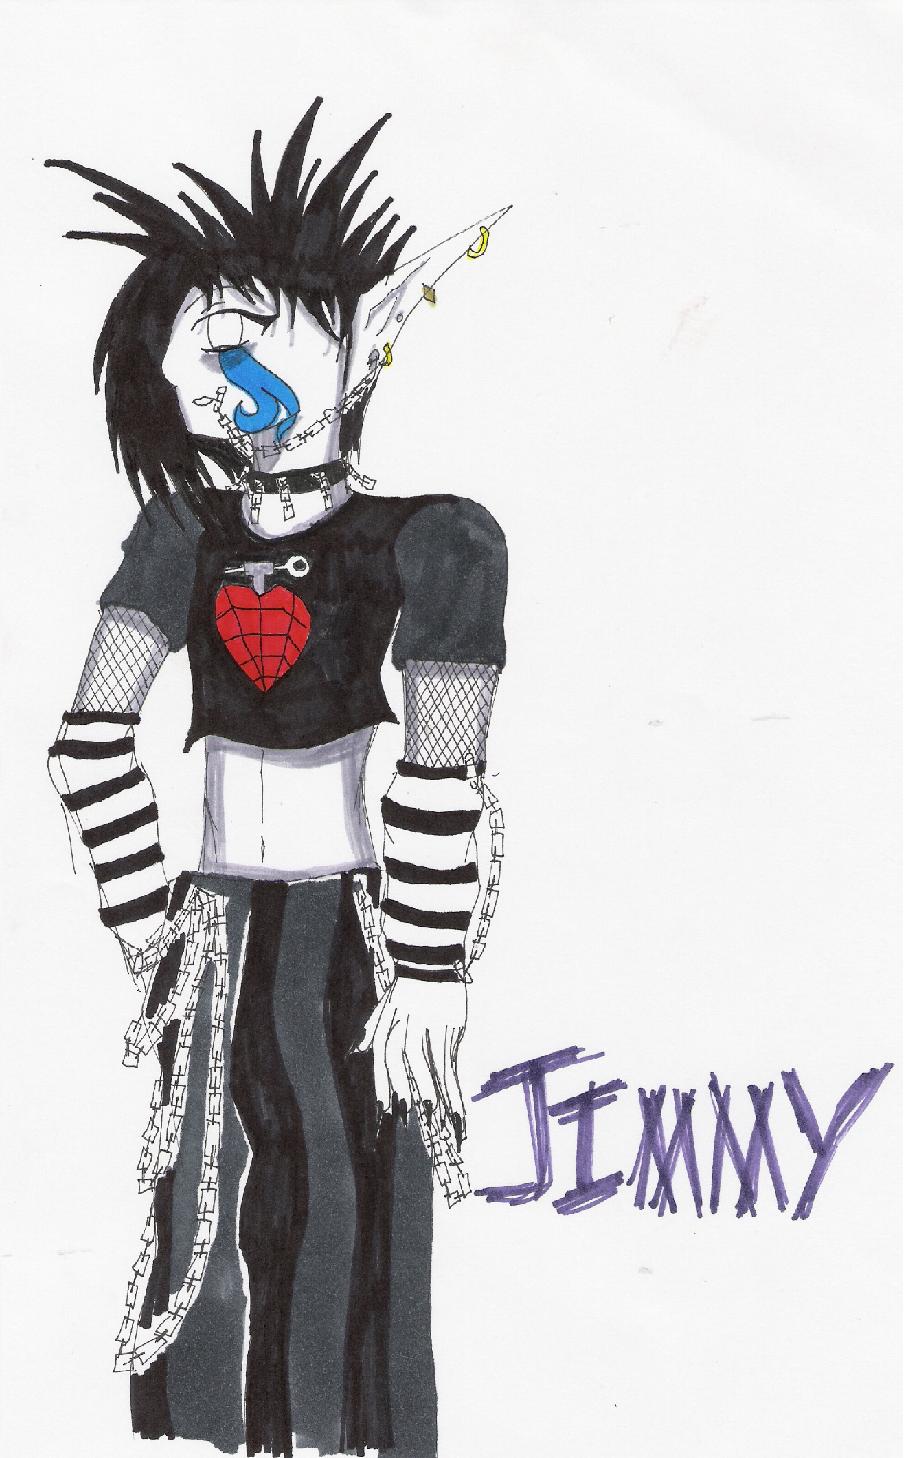 Jimmy by faustfreak